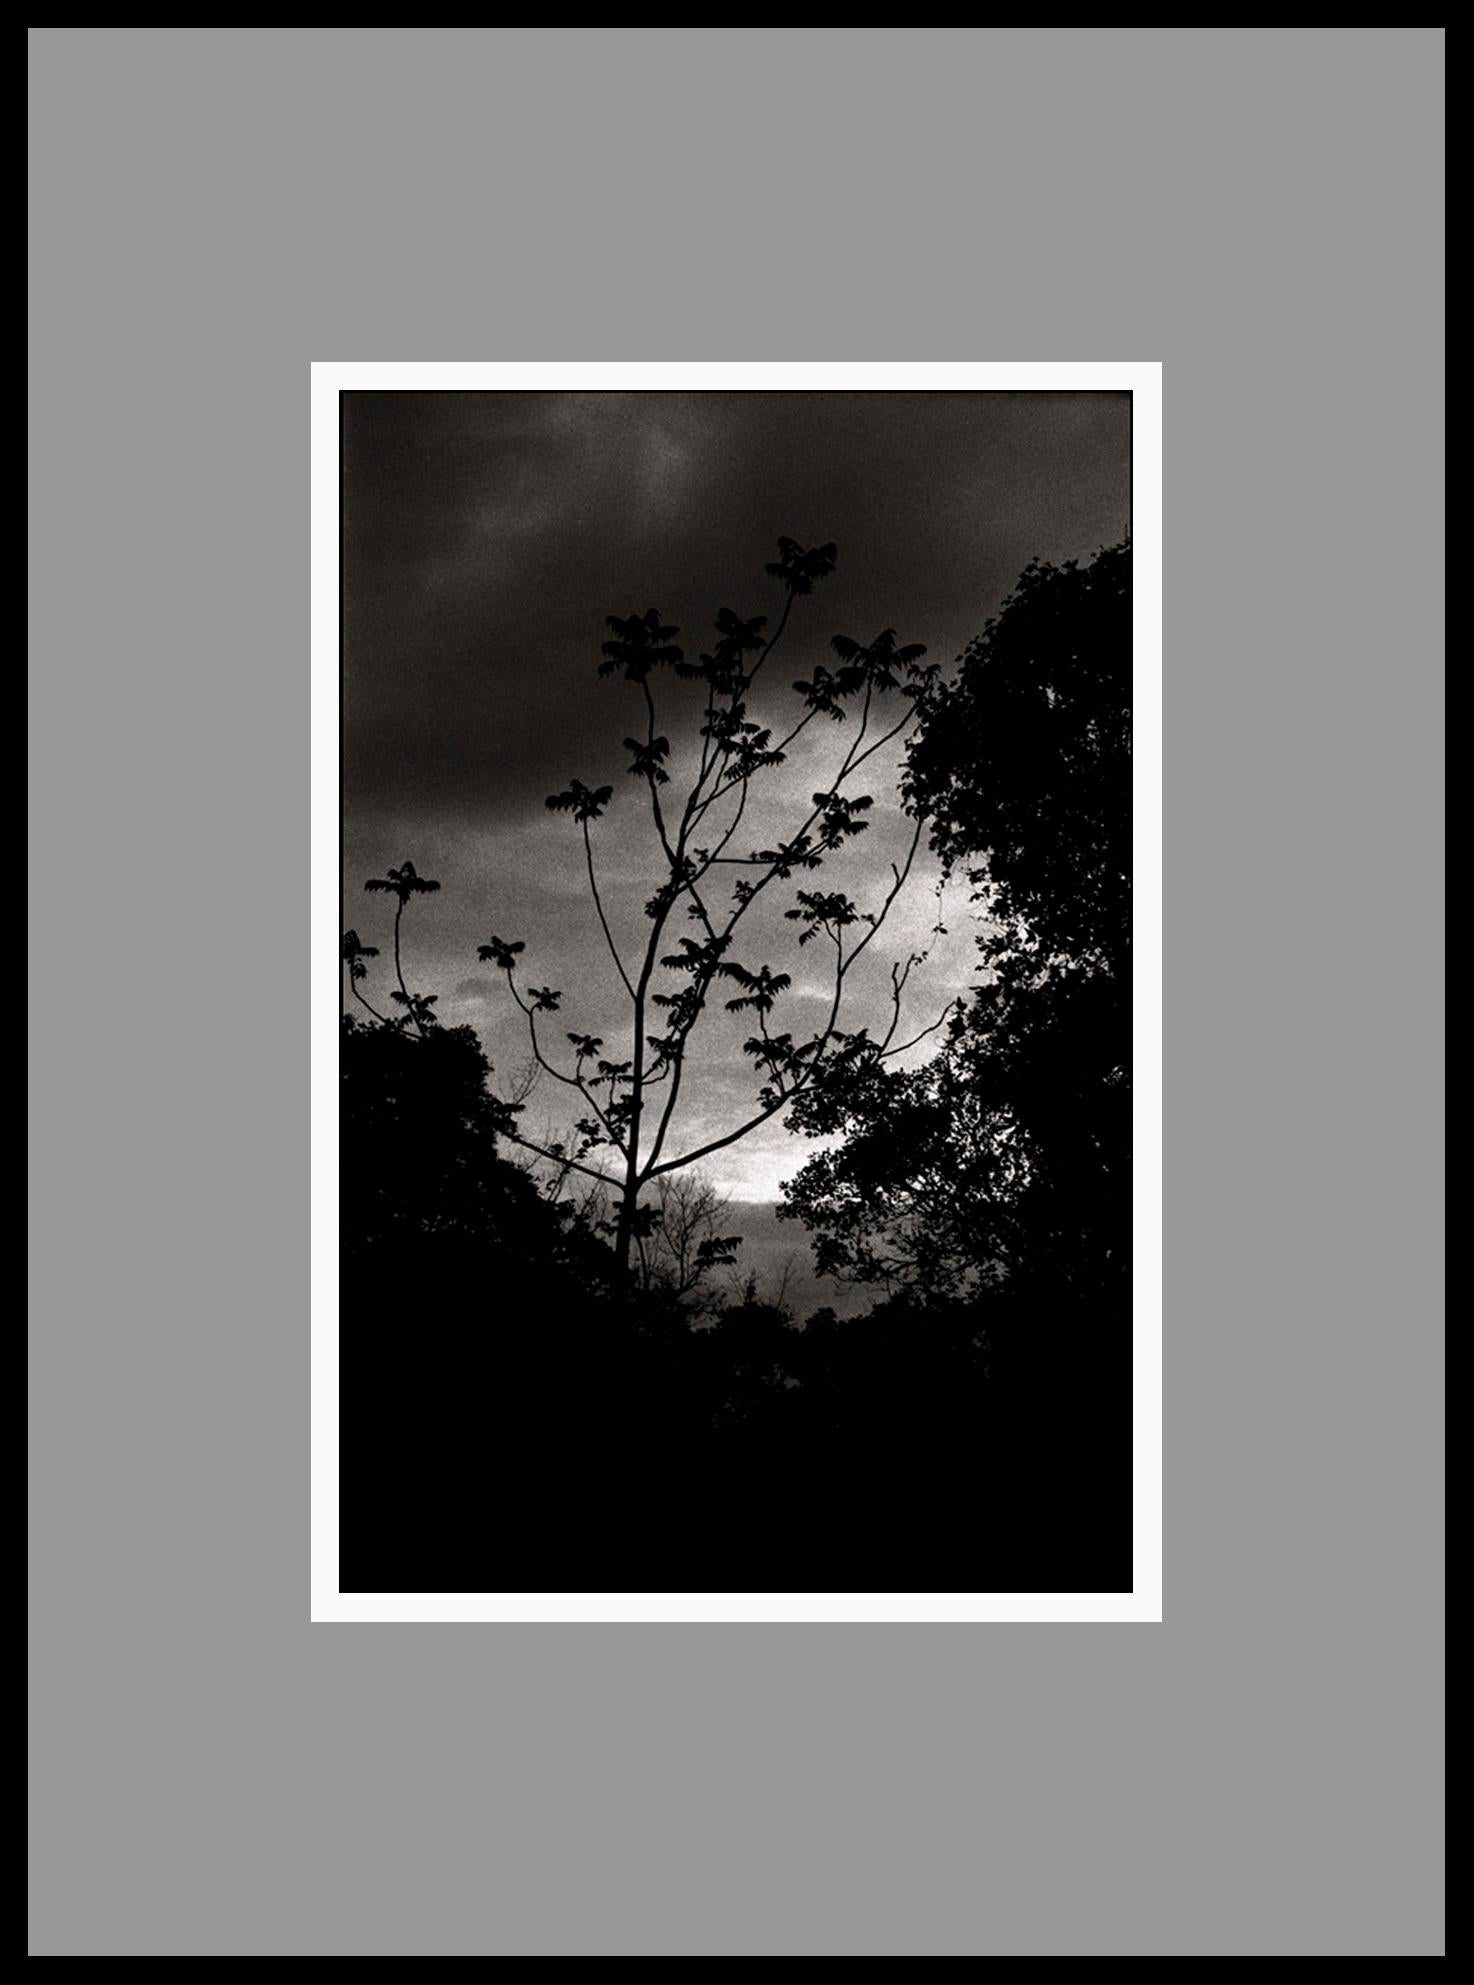 Nightfall, Portugal 2000 /Gelatin Silver Print/ Signé - Photograph de Ana Maria Cortesão